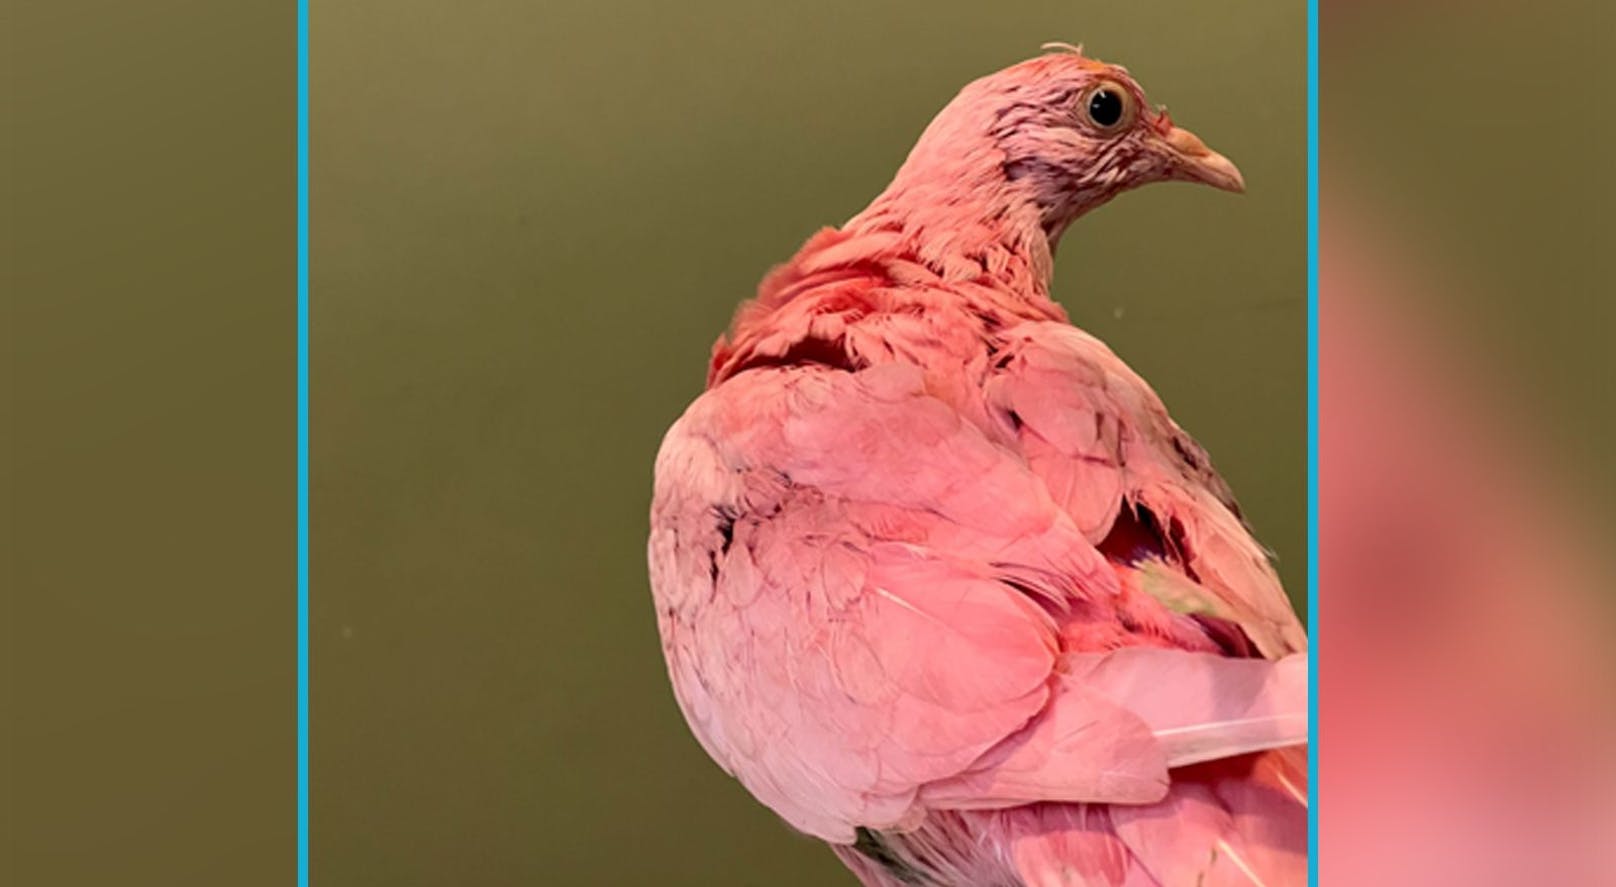 Trotz aller Versuche einer Tierschutzorganisation konnte "Flamingo" nicht gerettet werden. 